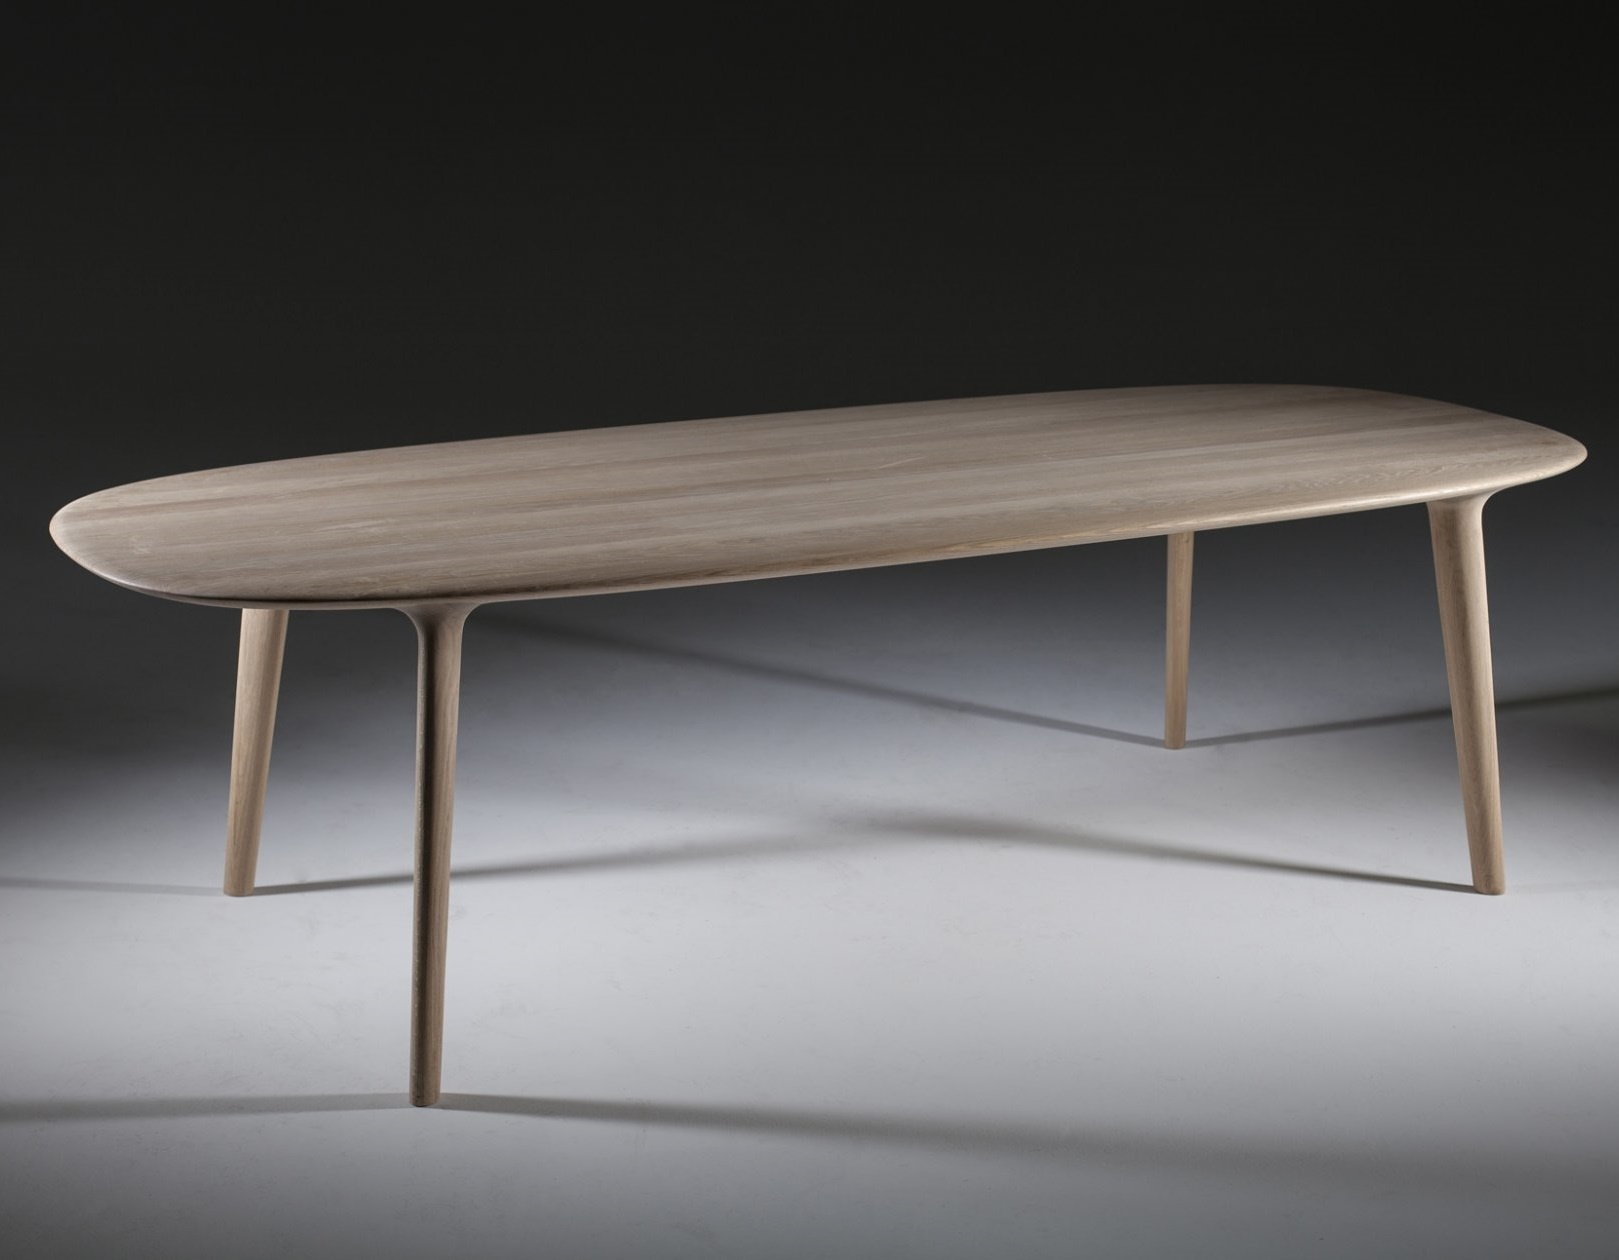 Attent Tot ziens wees gegroet Artisan Luc massief houten tafel - Design Online Meubels